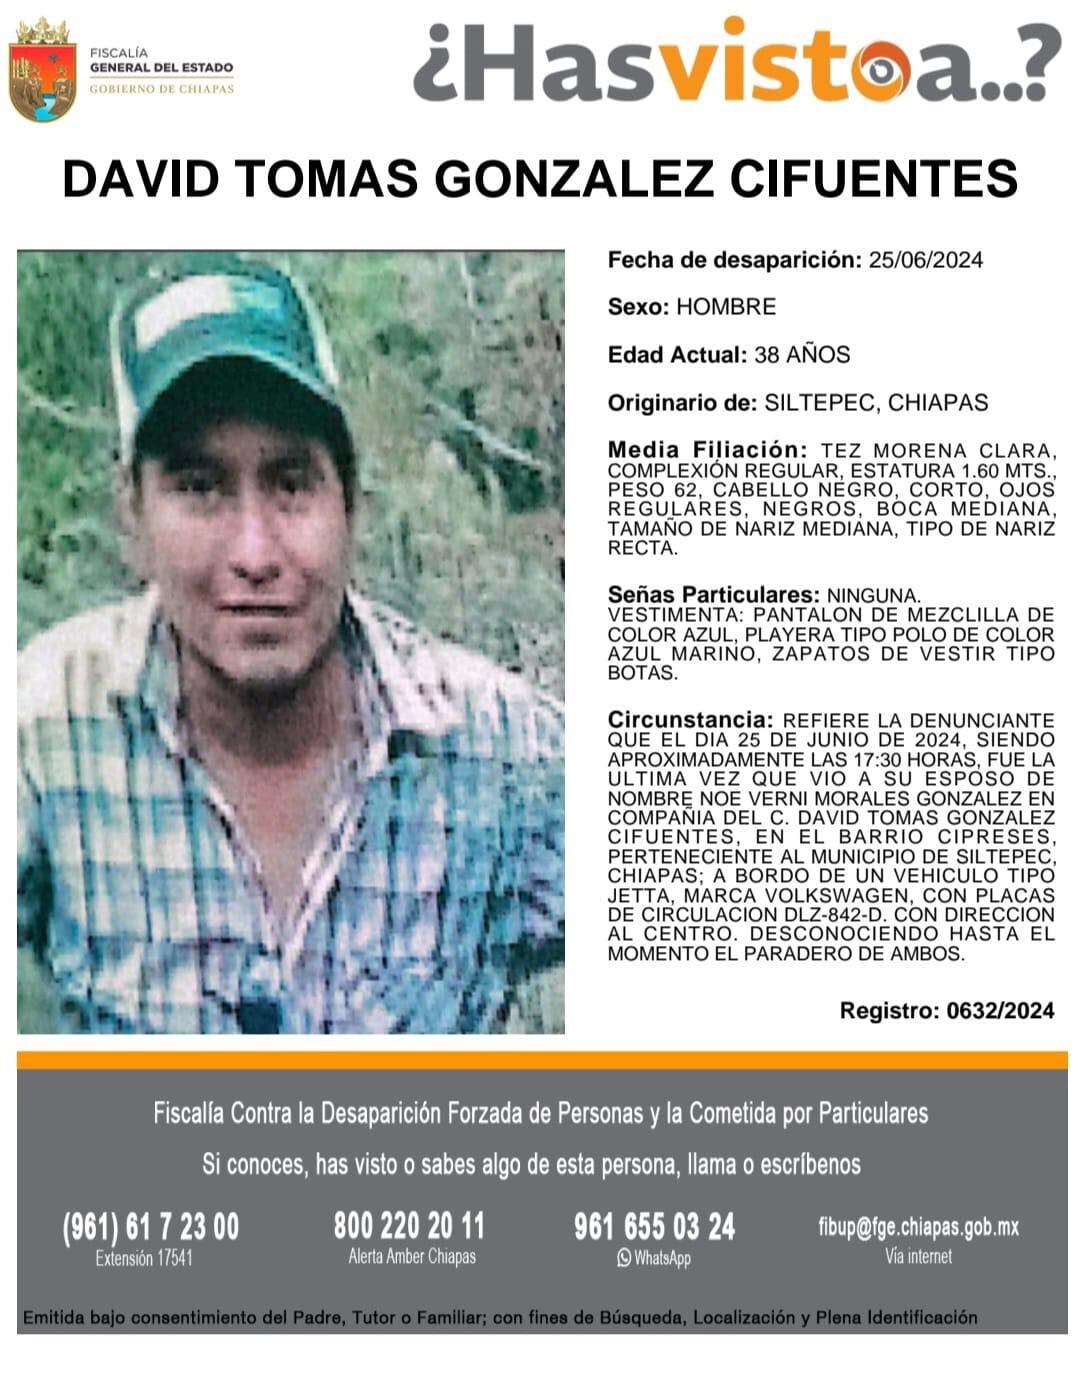 David Tomás González Cifuentes, desaparecido en Siltepec, Chiapas